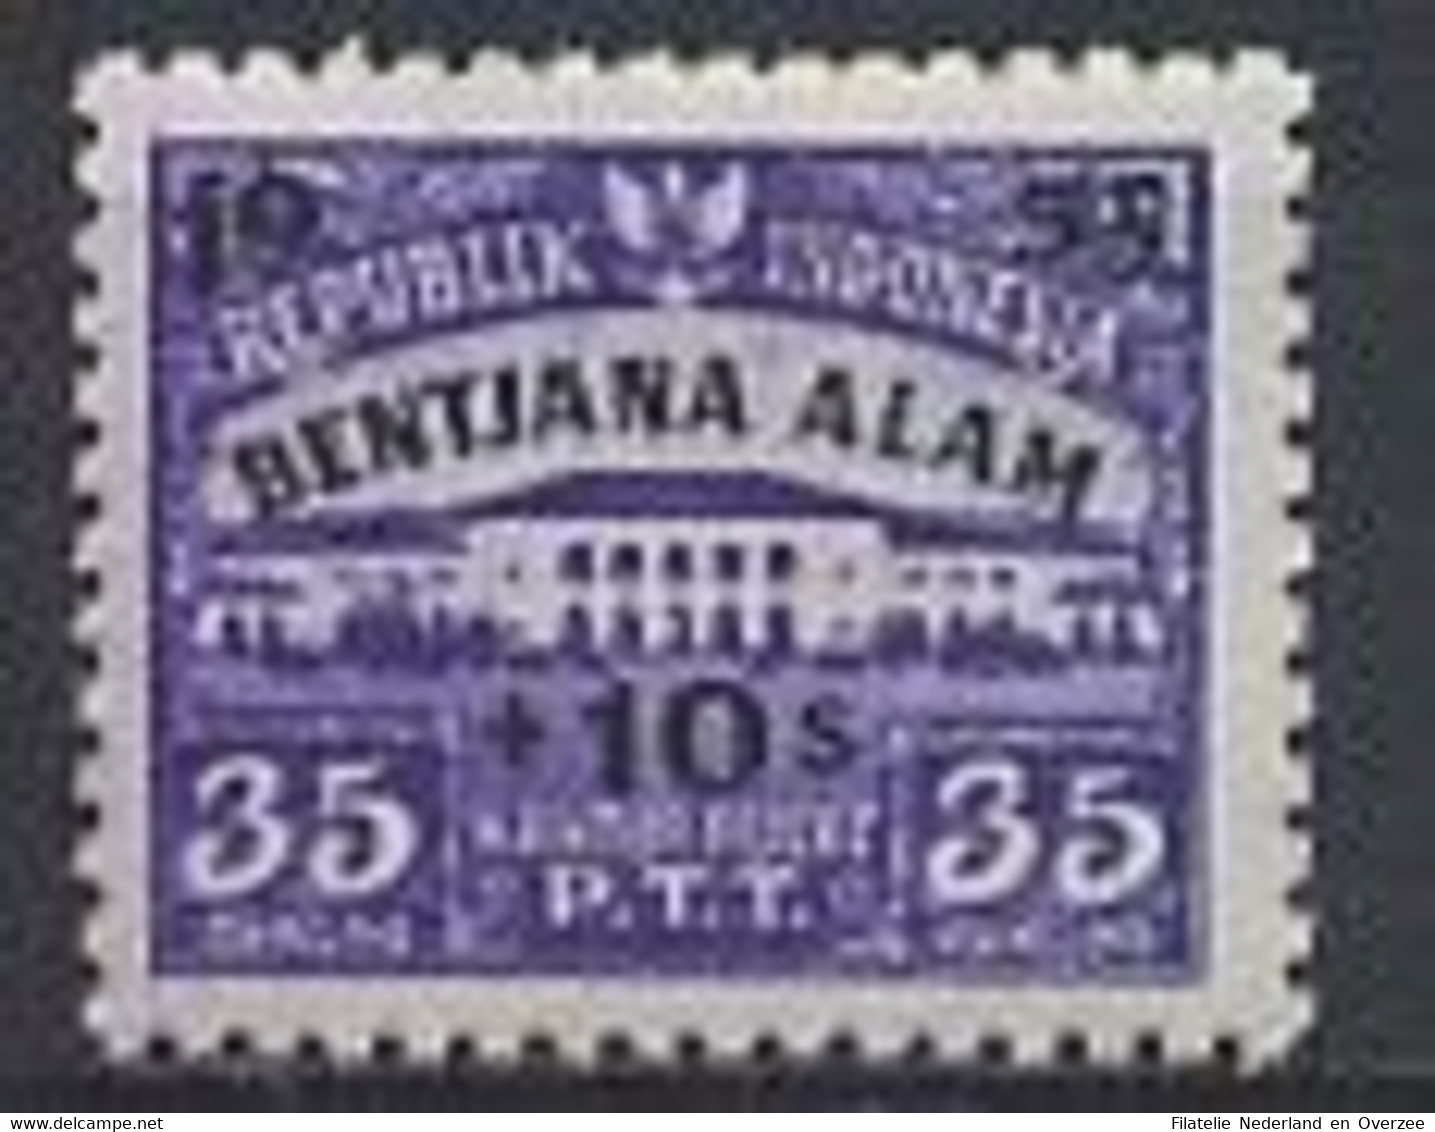 Indonesië / Indonesia 1953 Nr 117 Postfris/MNH Ten Bate Van De Slachtoffers Van De Watersnood In Atjeh - Indonesia